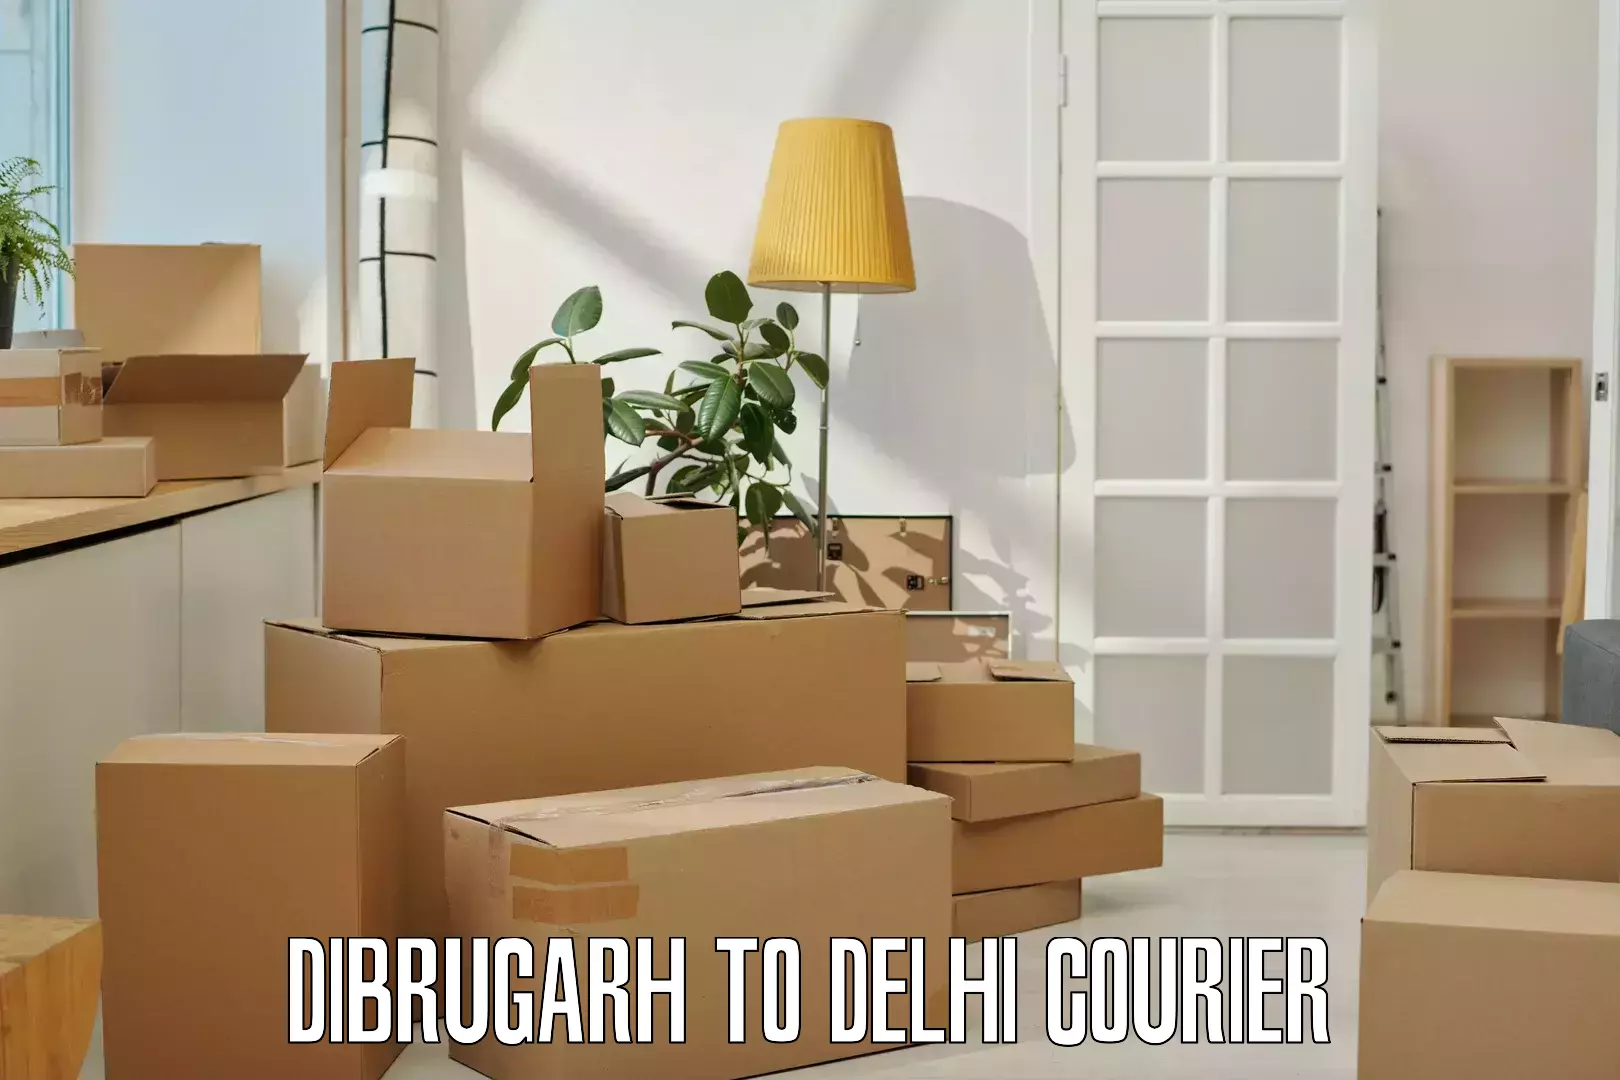 Customer-oriented courier services Dibrugarh to Guru Gobind Singh Indraprastha University New Delhi